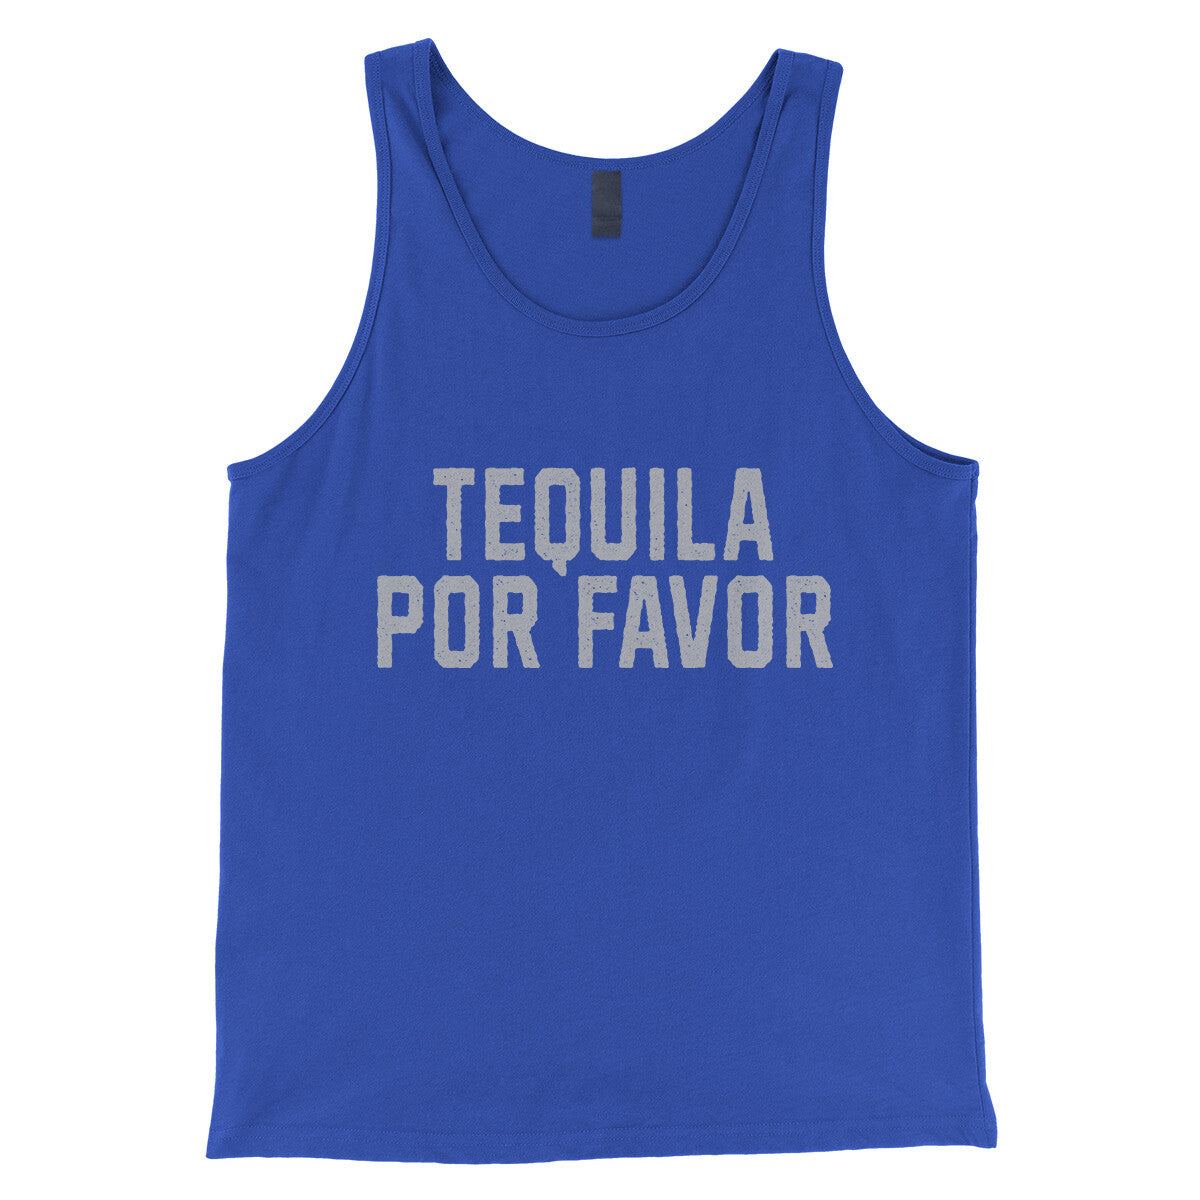 Tequila Por Favor in True Royal Color